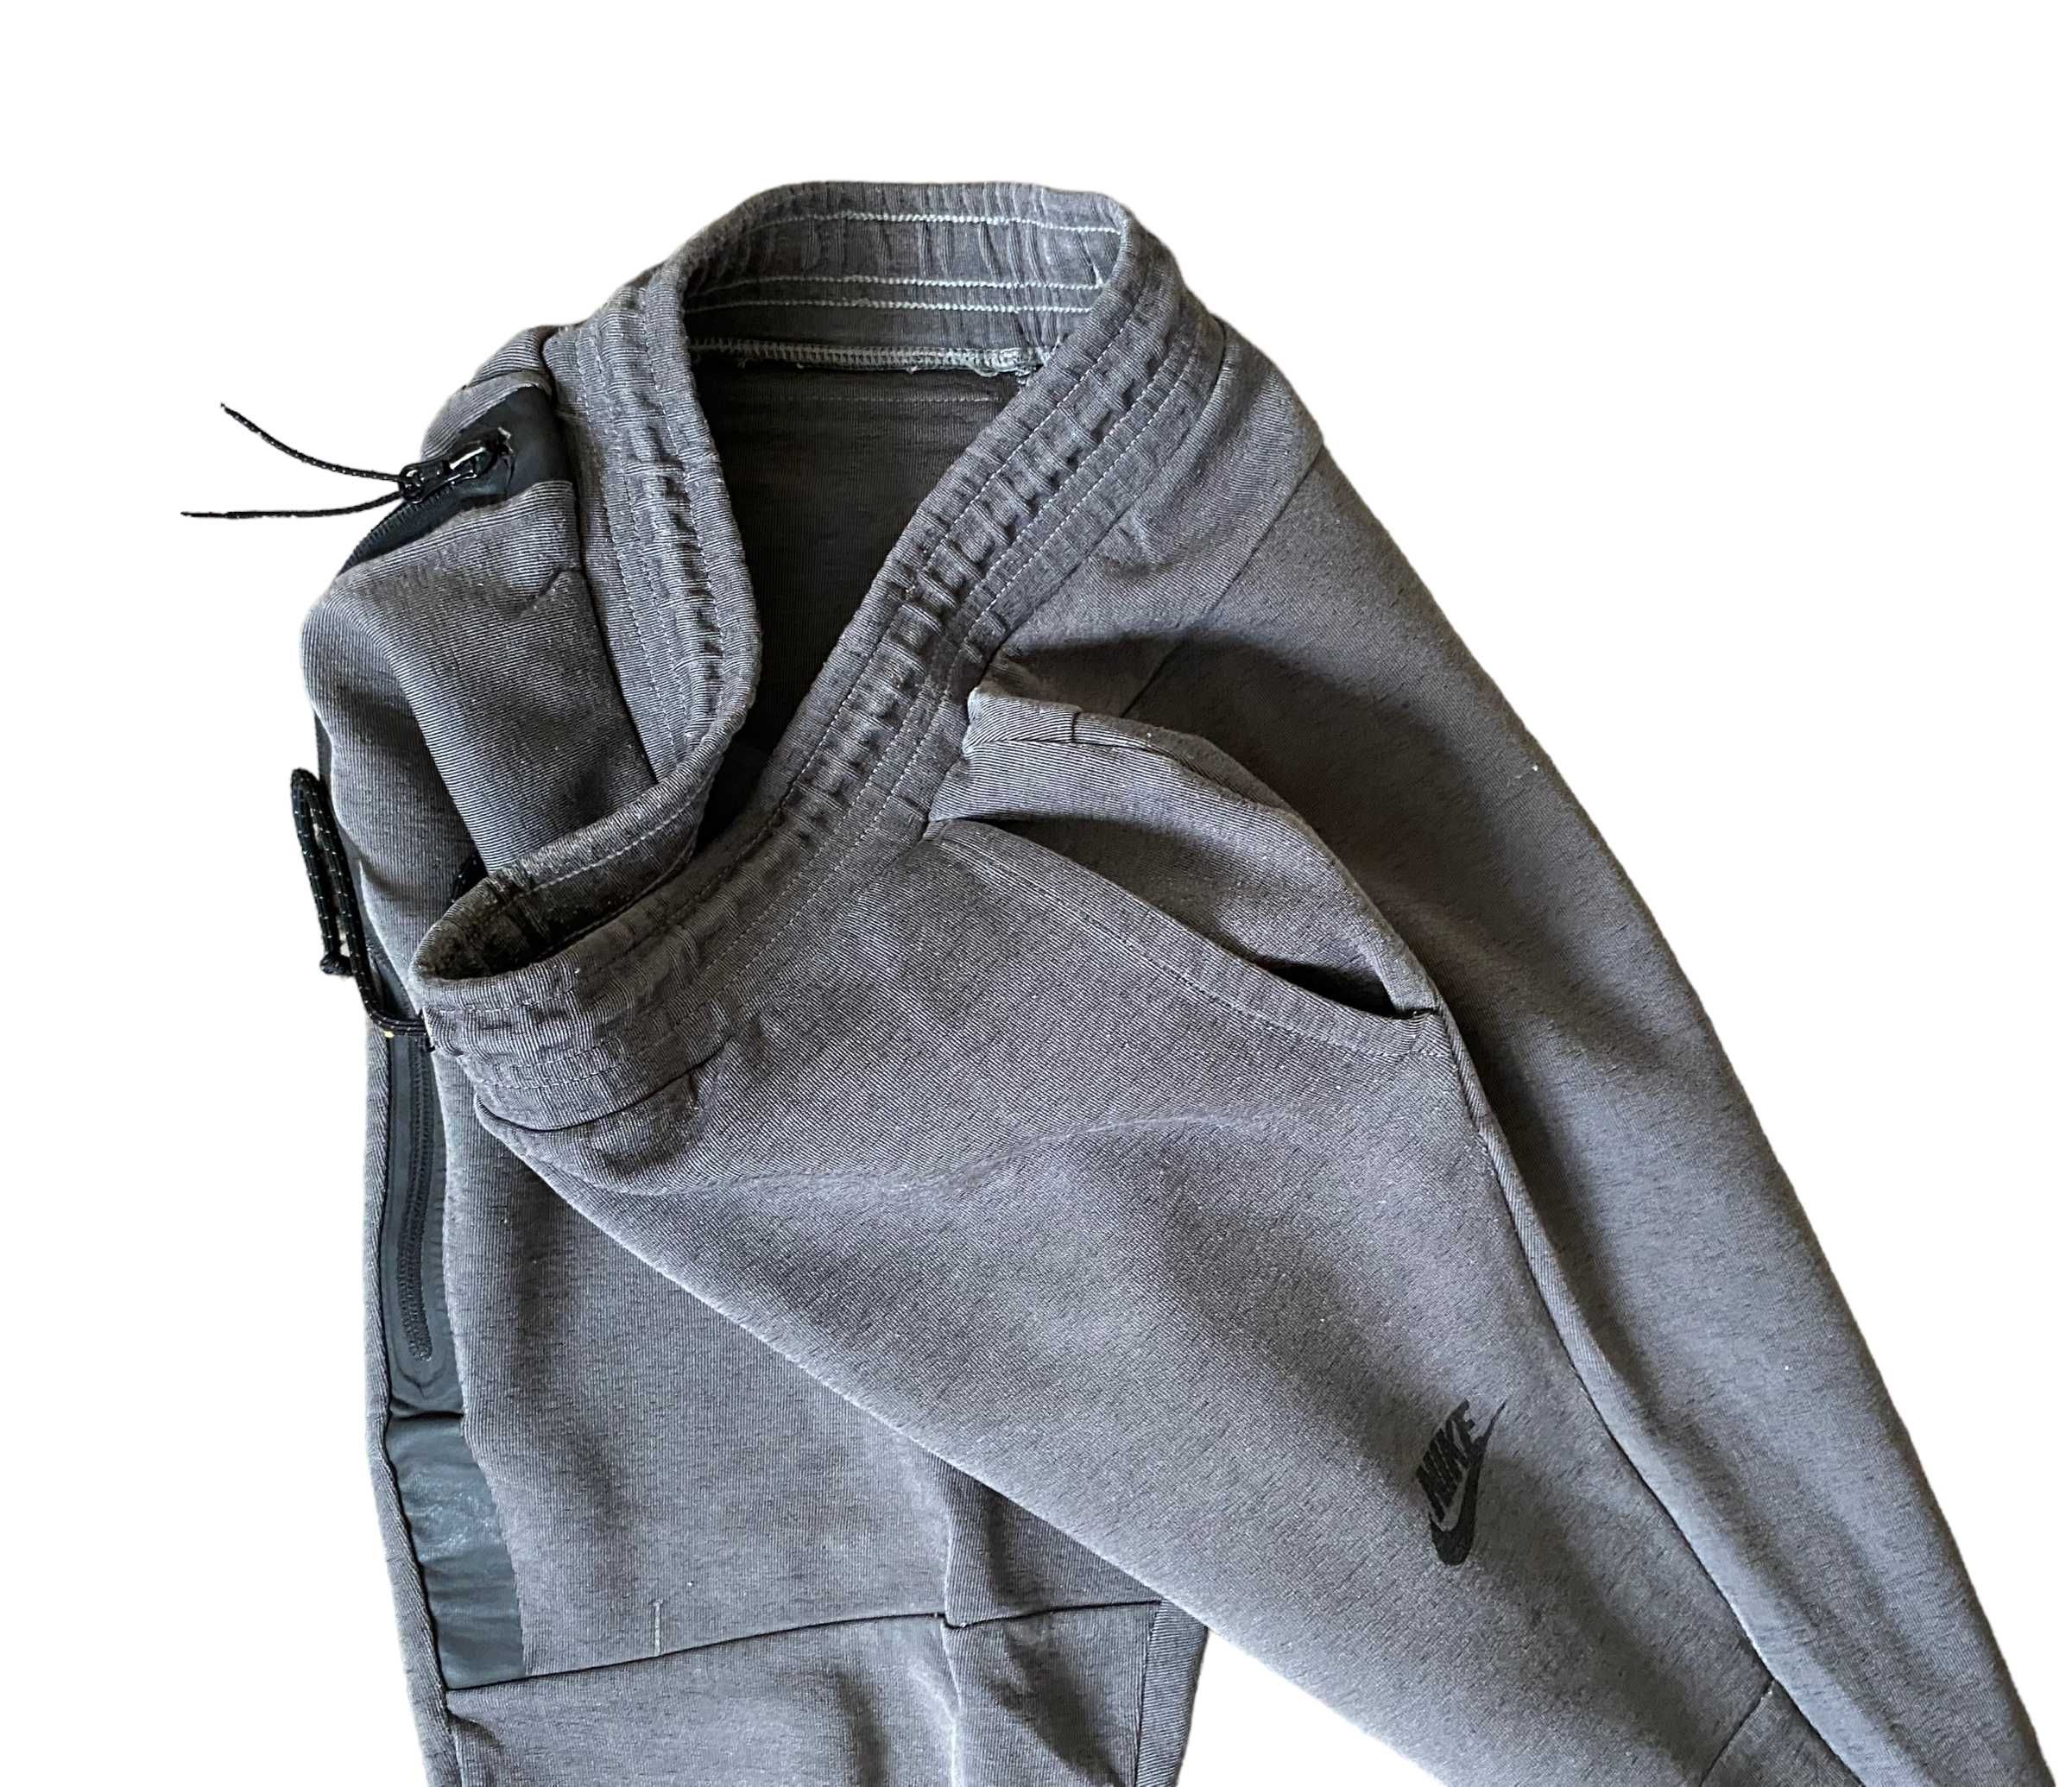 Nike tech fleece szare spodnie, rozmiar M, stan dobry